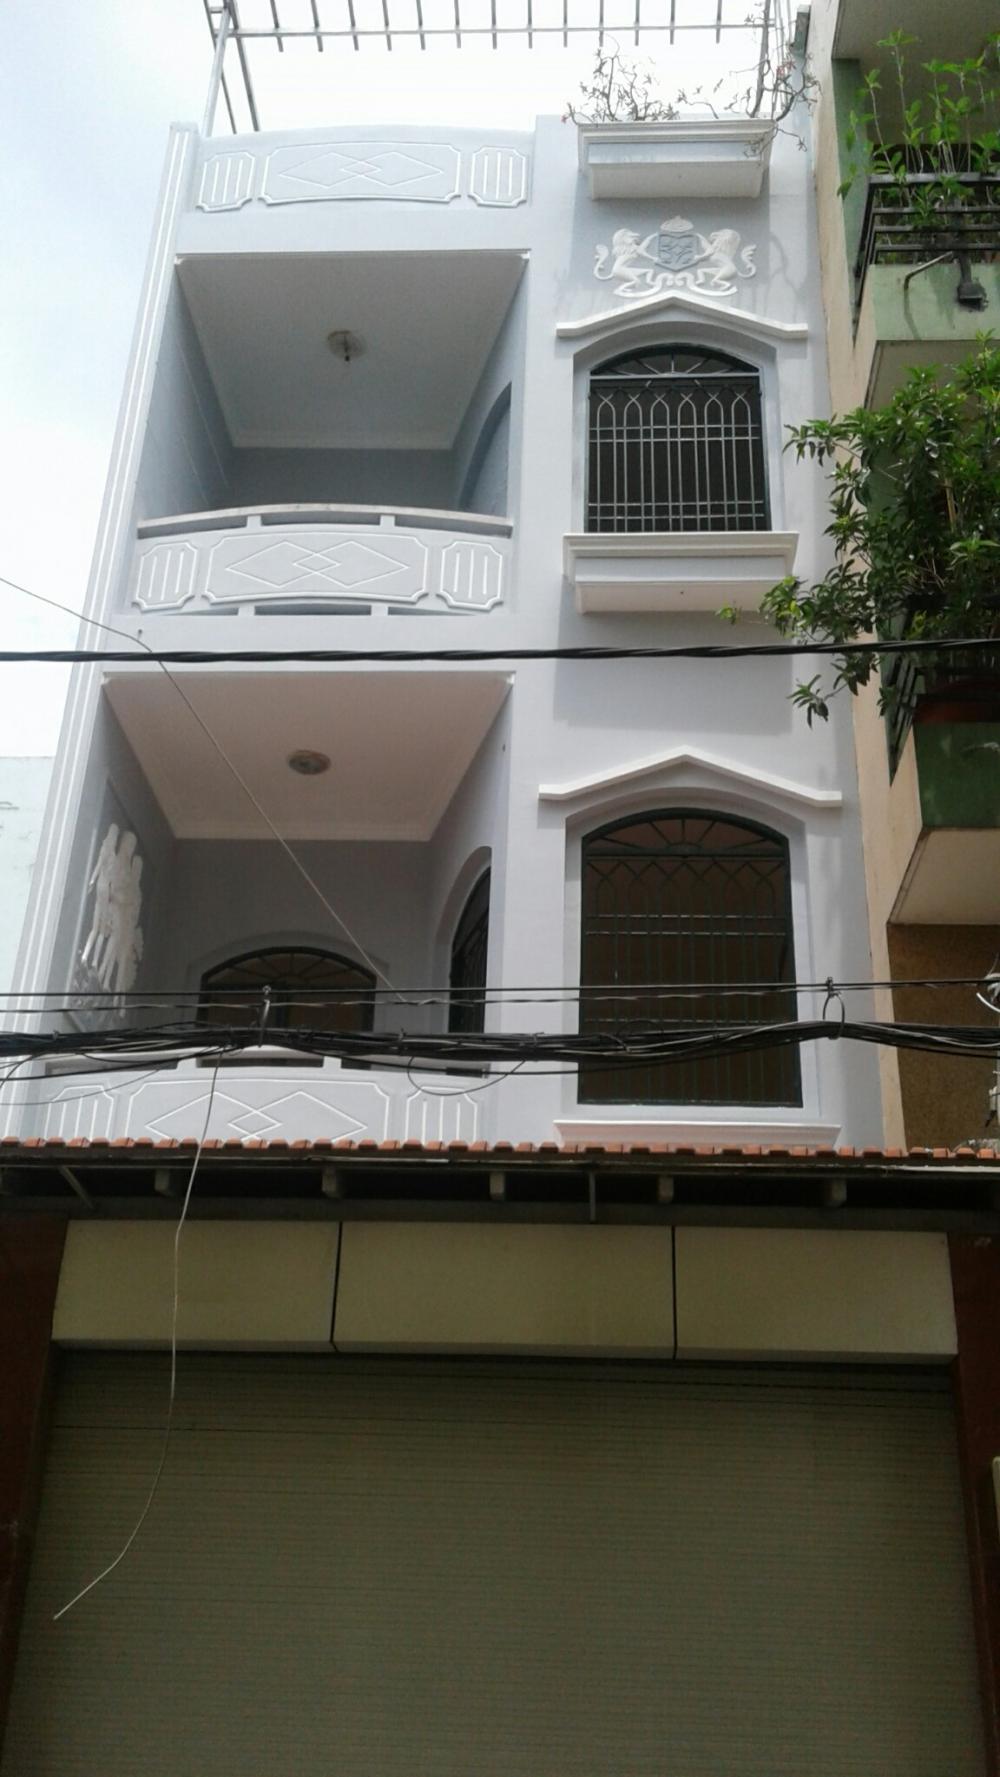 Bán gấp 2 nhà lầu liền kề hẻm 143, Đ. Phạm Huy Thông, P. 6, Q. Gò Vấp